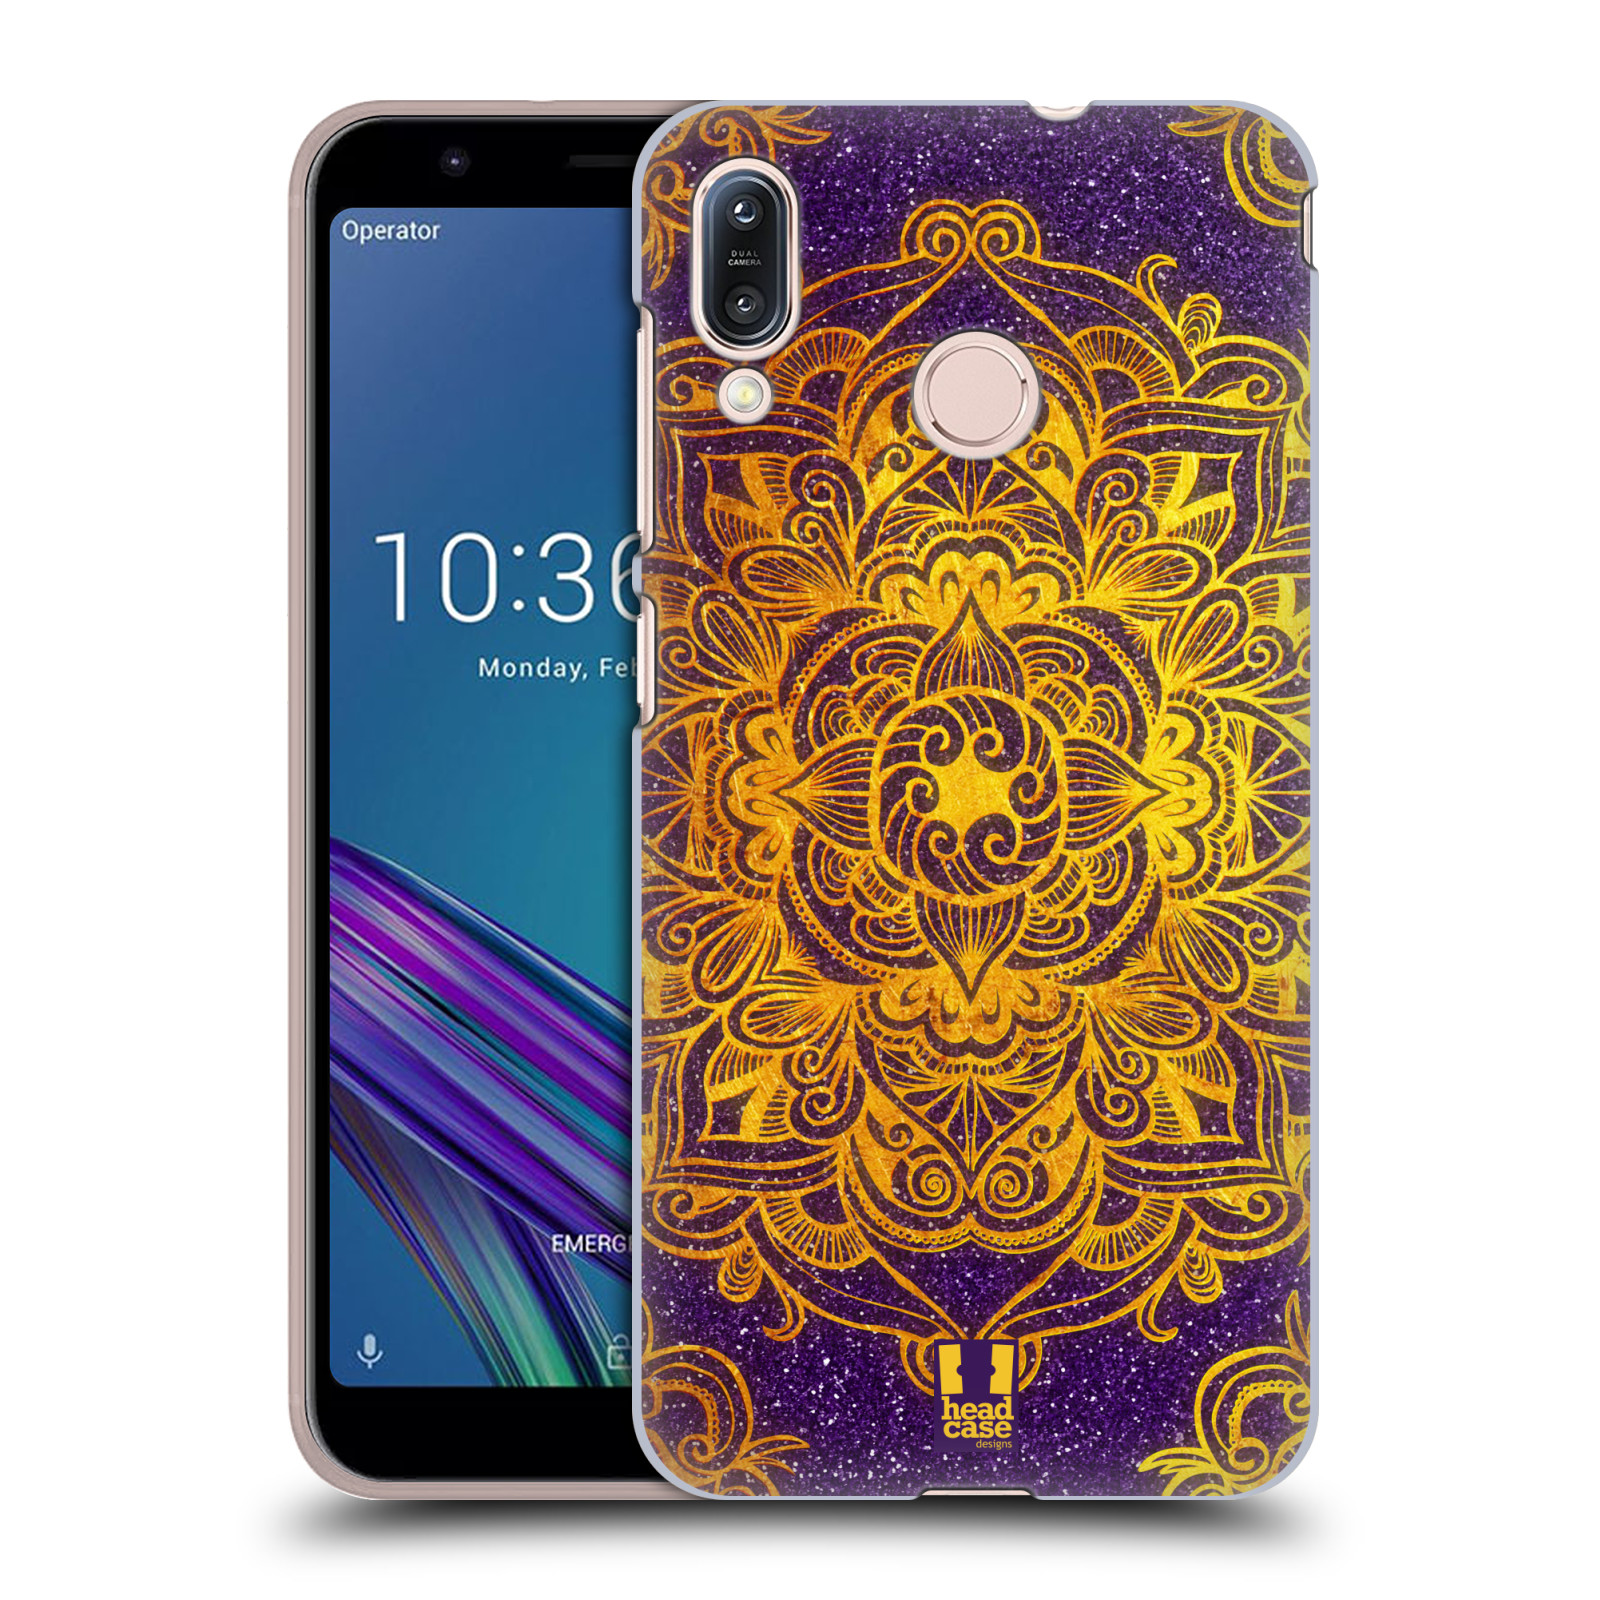 Pouzdro na mobil Asus Zenfone Max M1 (ZB555KL) - HEAD CASE - vzor Indie Mandala slunce barevná ZLATÁ A FIALOVÁ